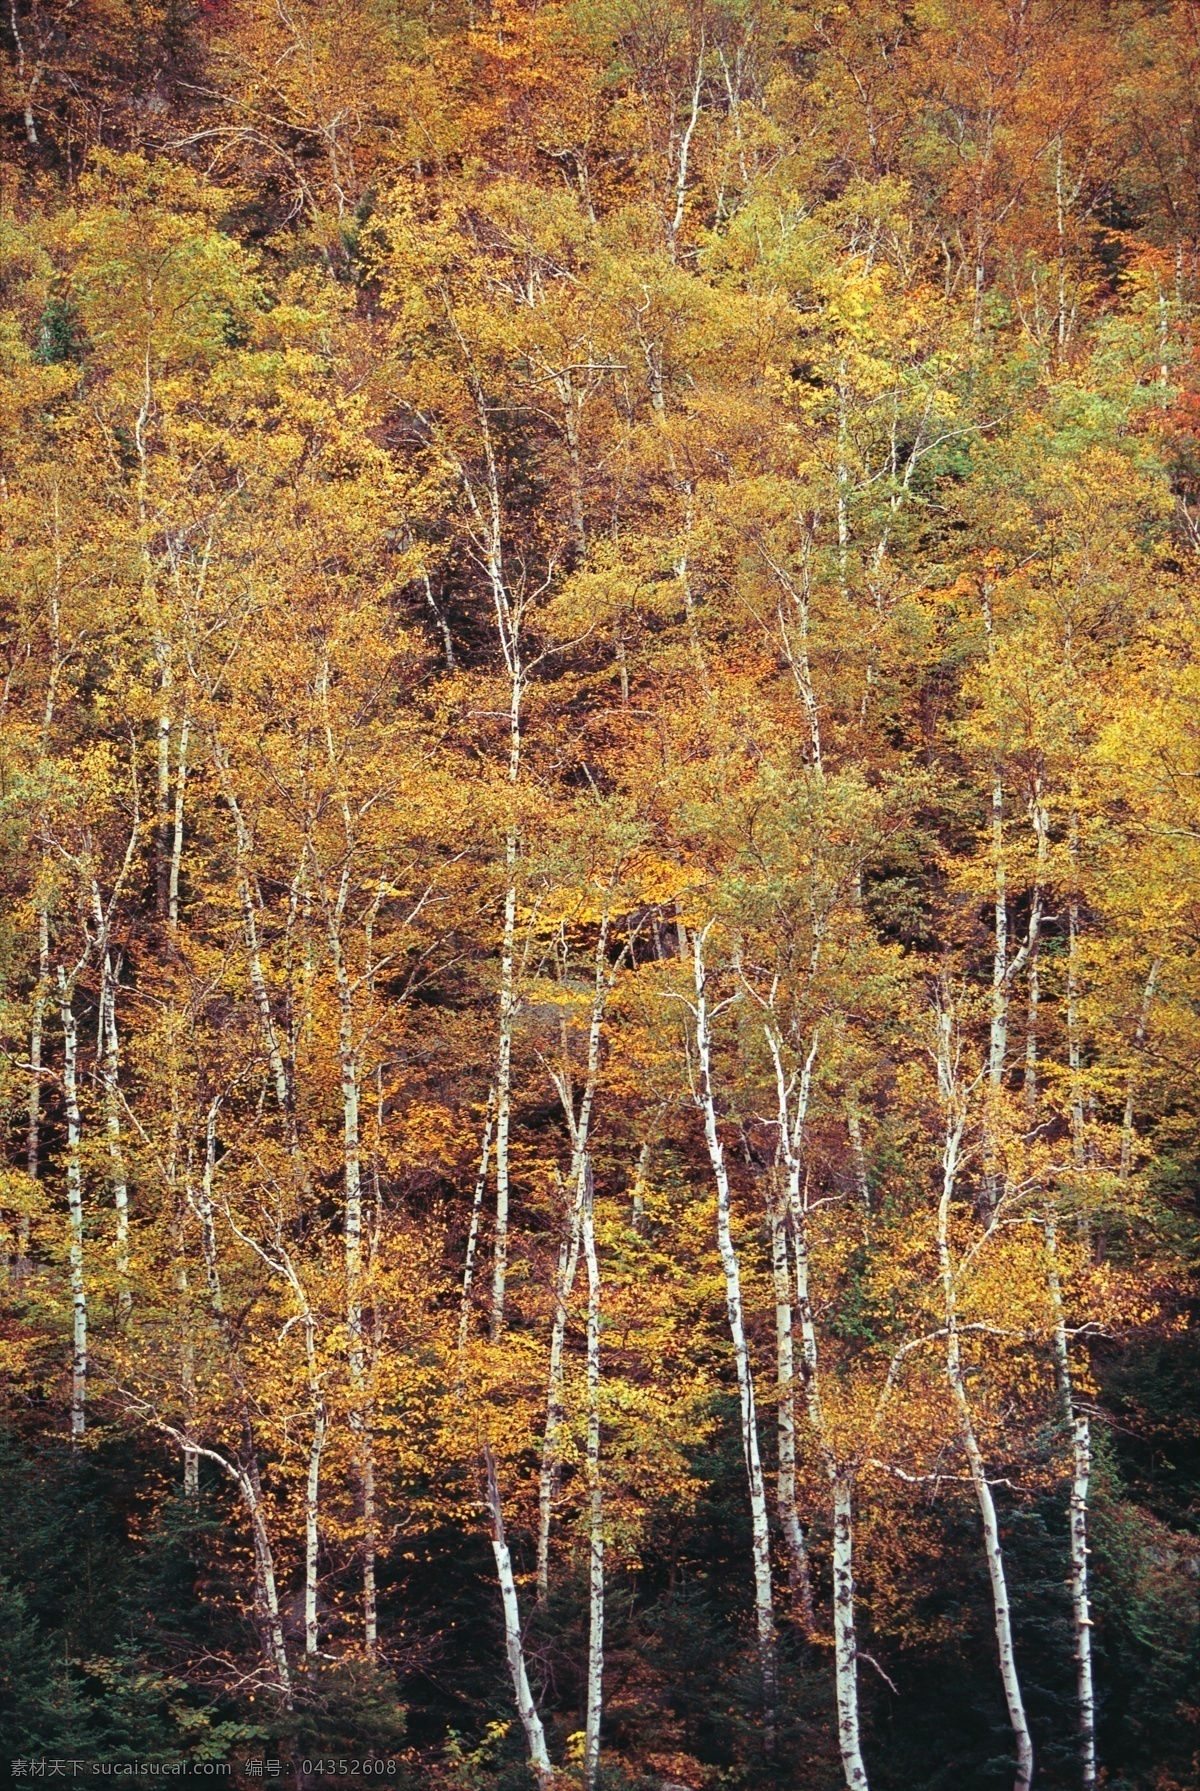 秋天 树林 风景 树木风景 枫树 黄叶 枫叶 美景 美丽风景 摄影图 高清图片 花草树木 生物世界 黑色